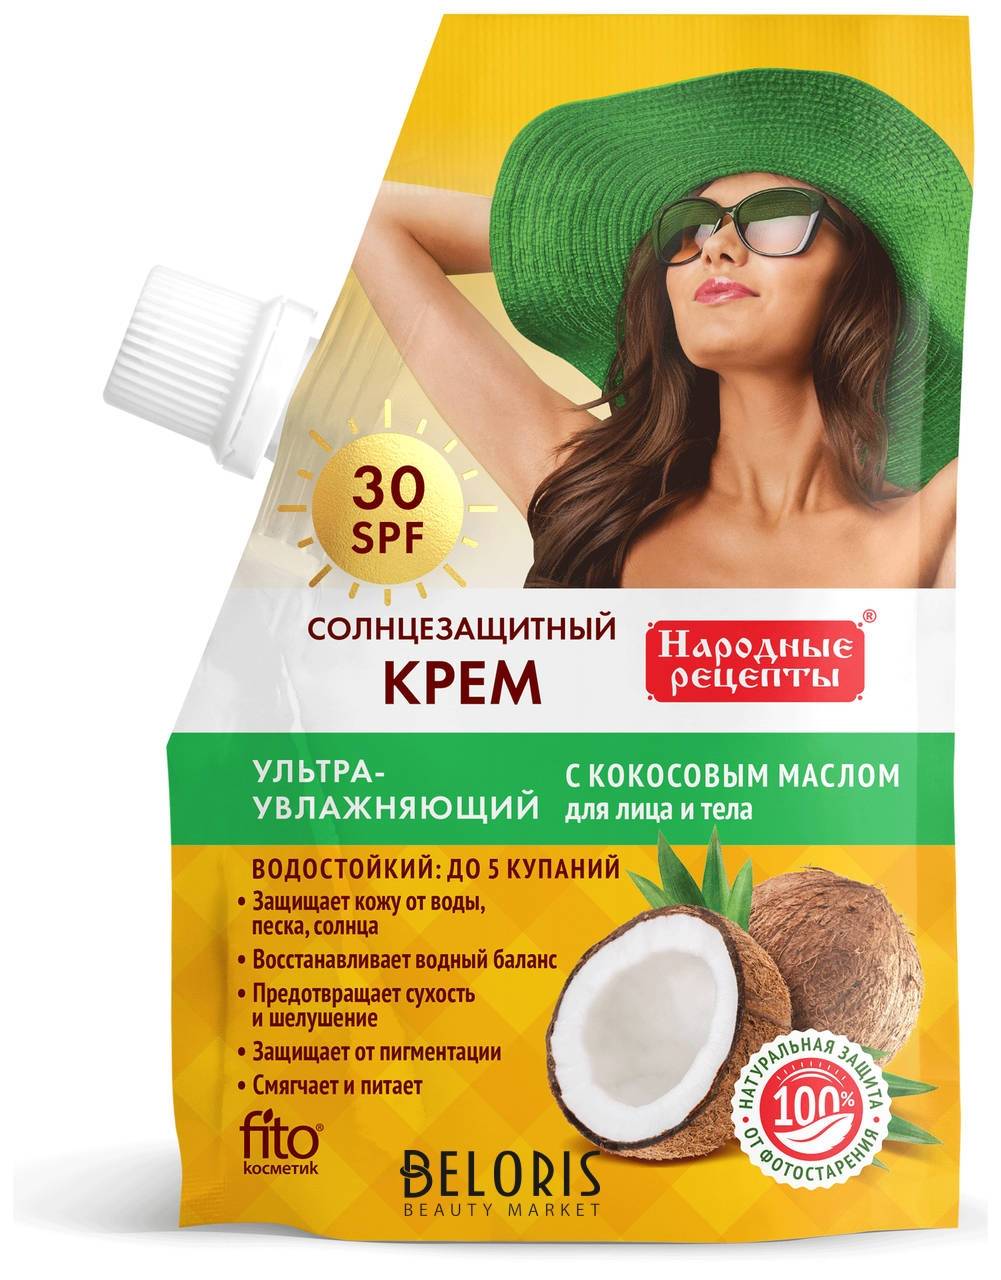 Солнцезащитный крем для лица и тела льтраувлажняющий 30 SPF Фитокосметик Народные рецепты